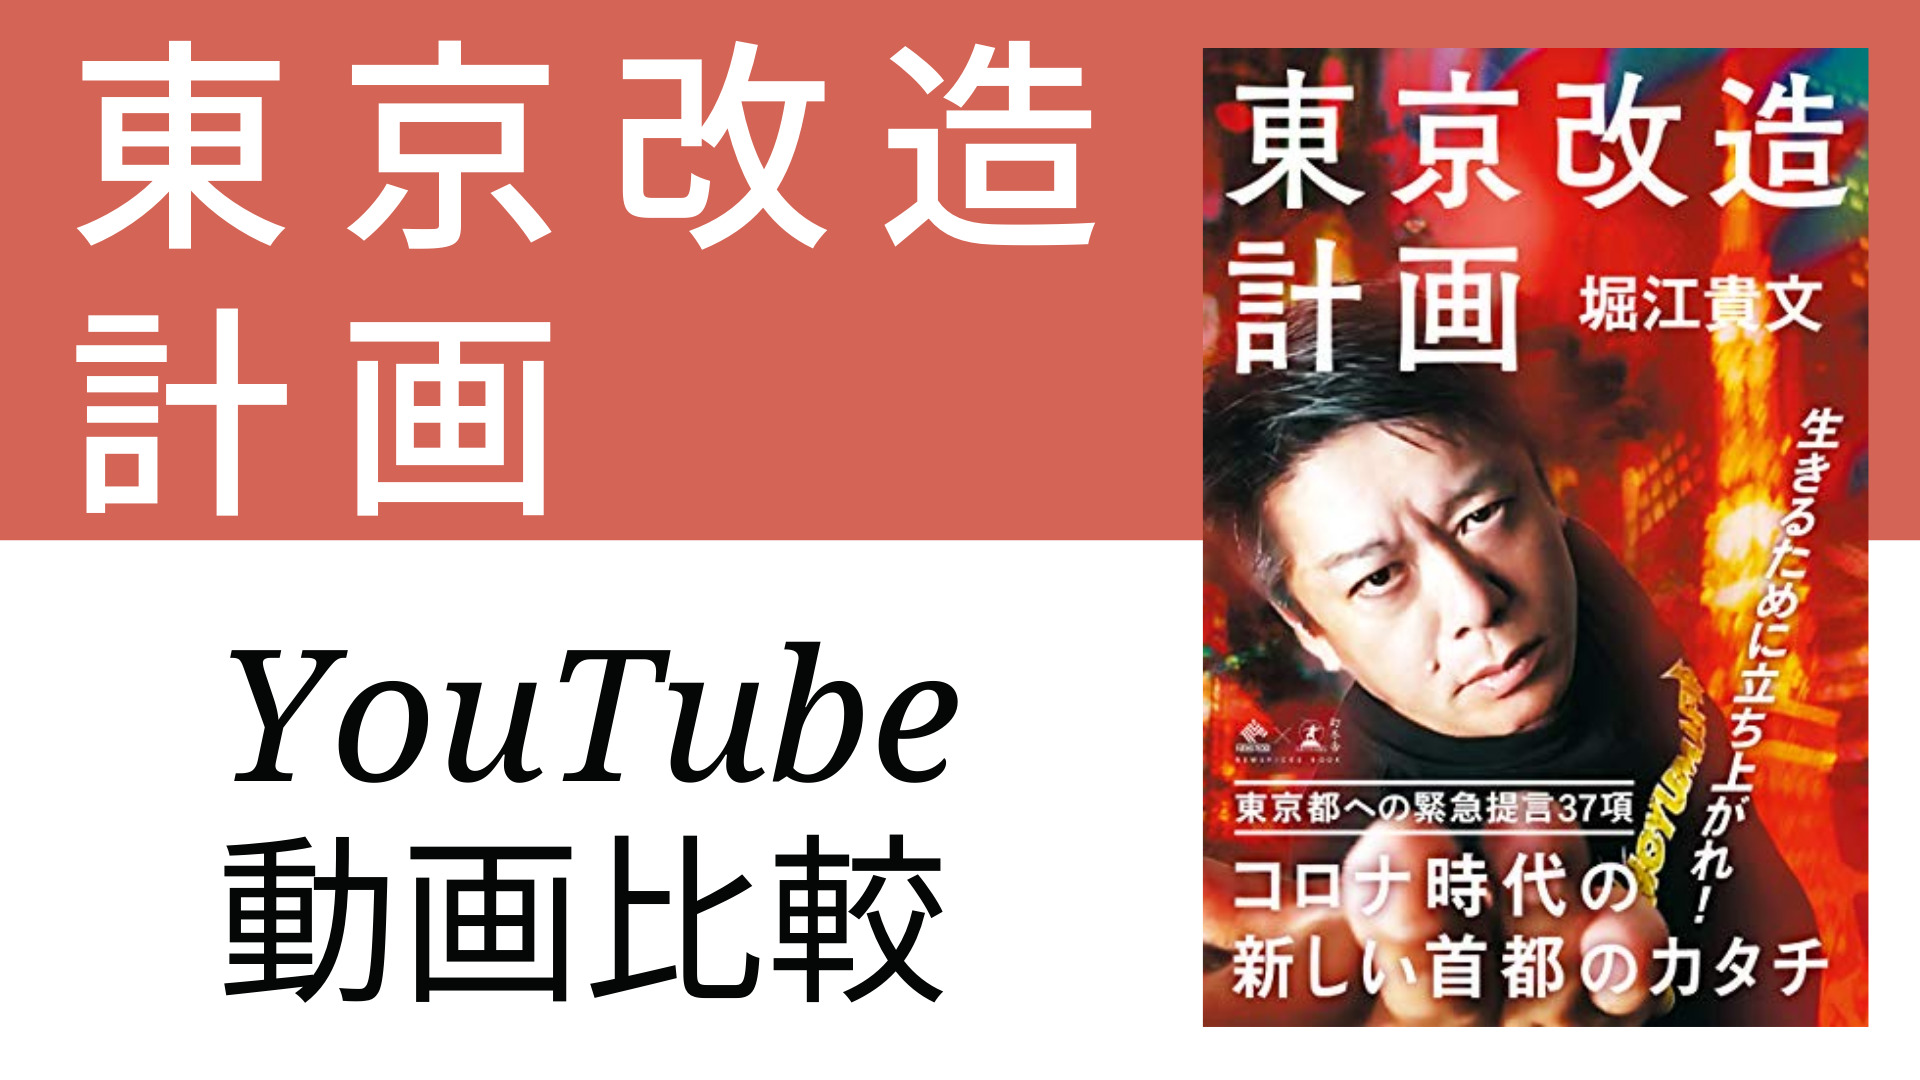 東京改造計画 YouTube動画比較